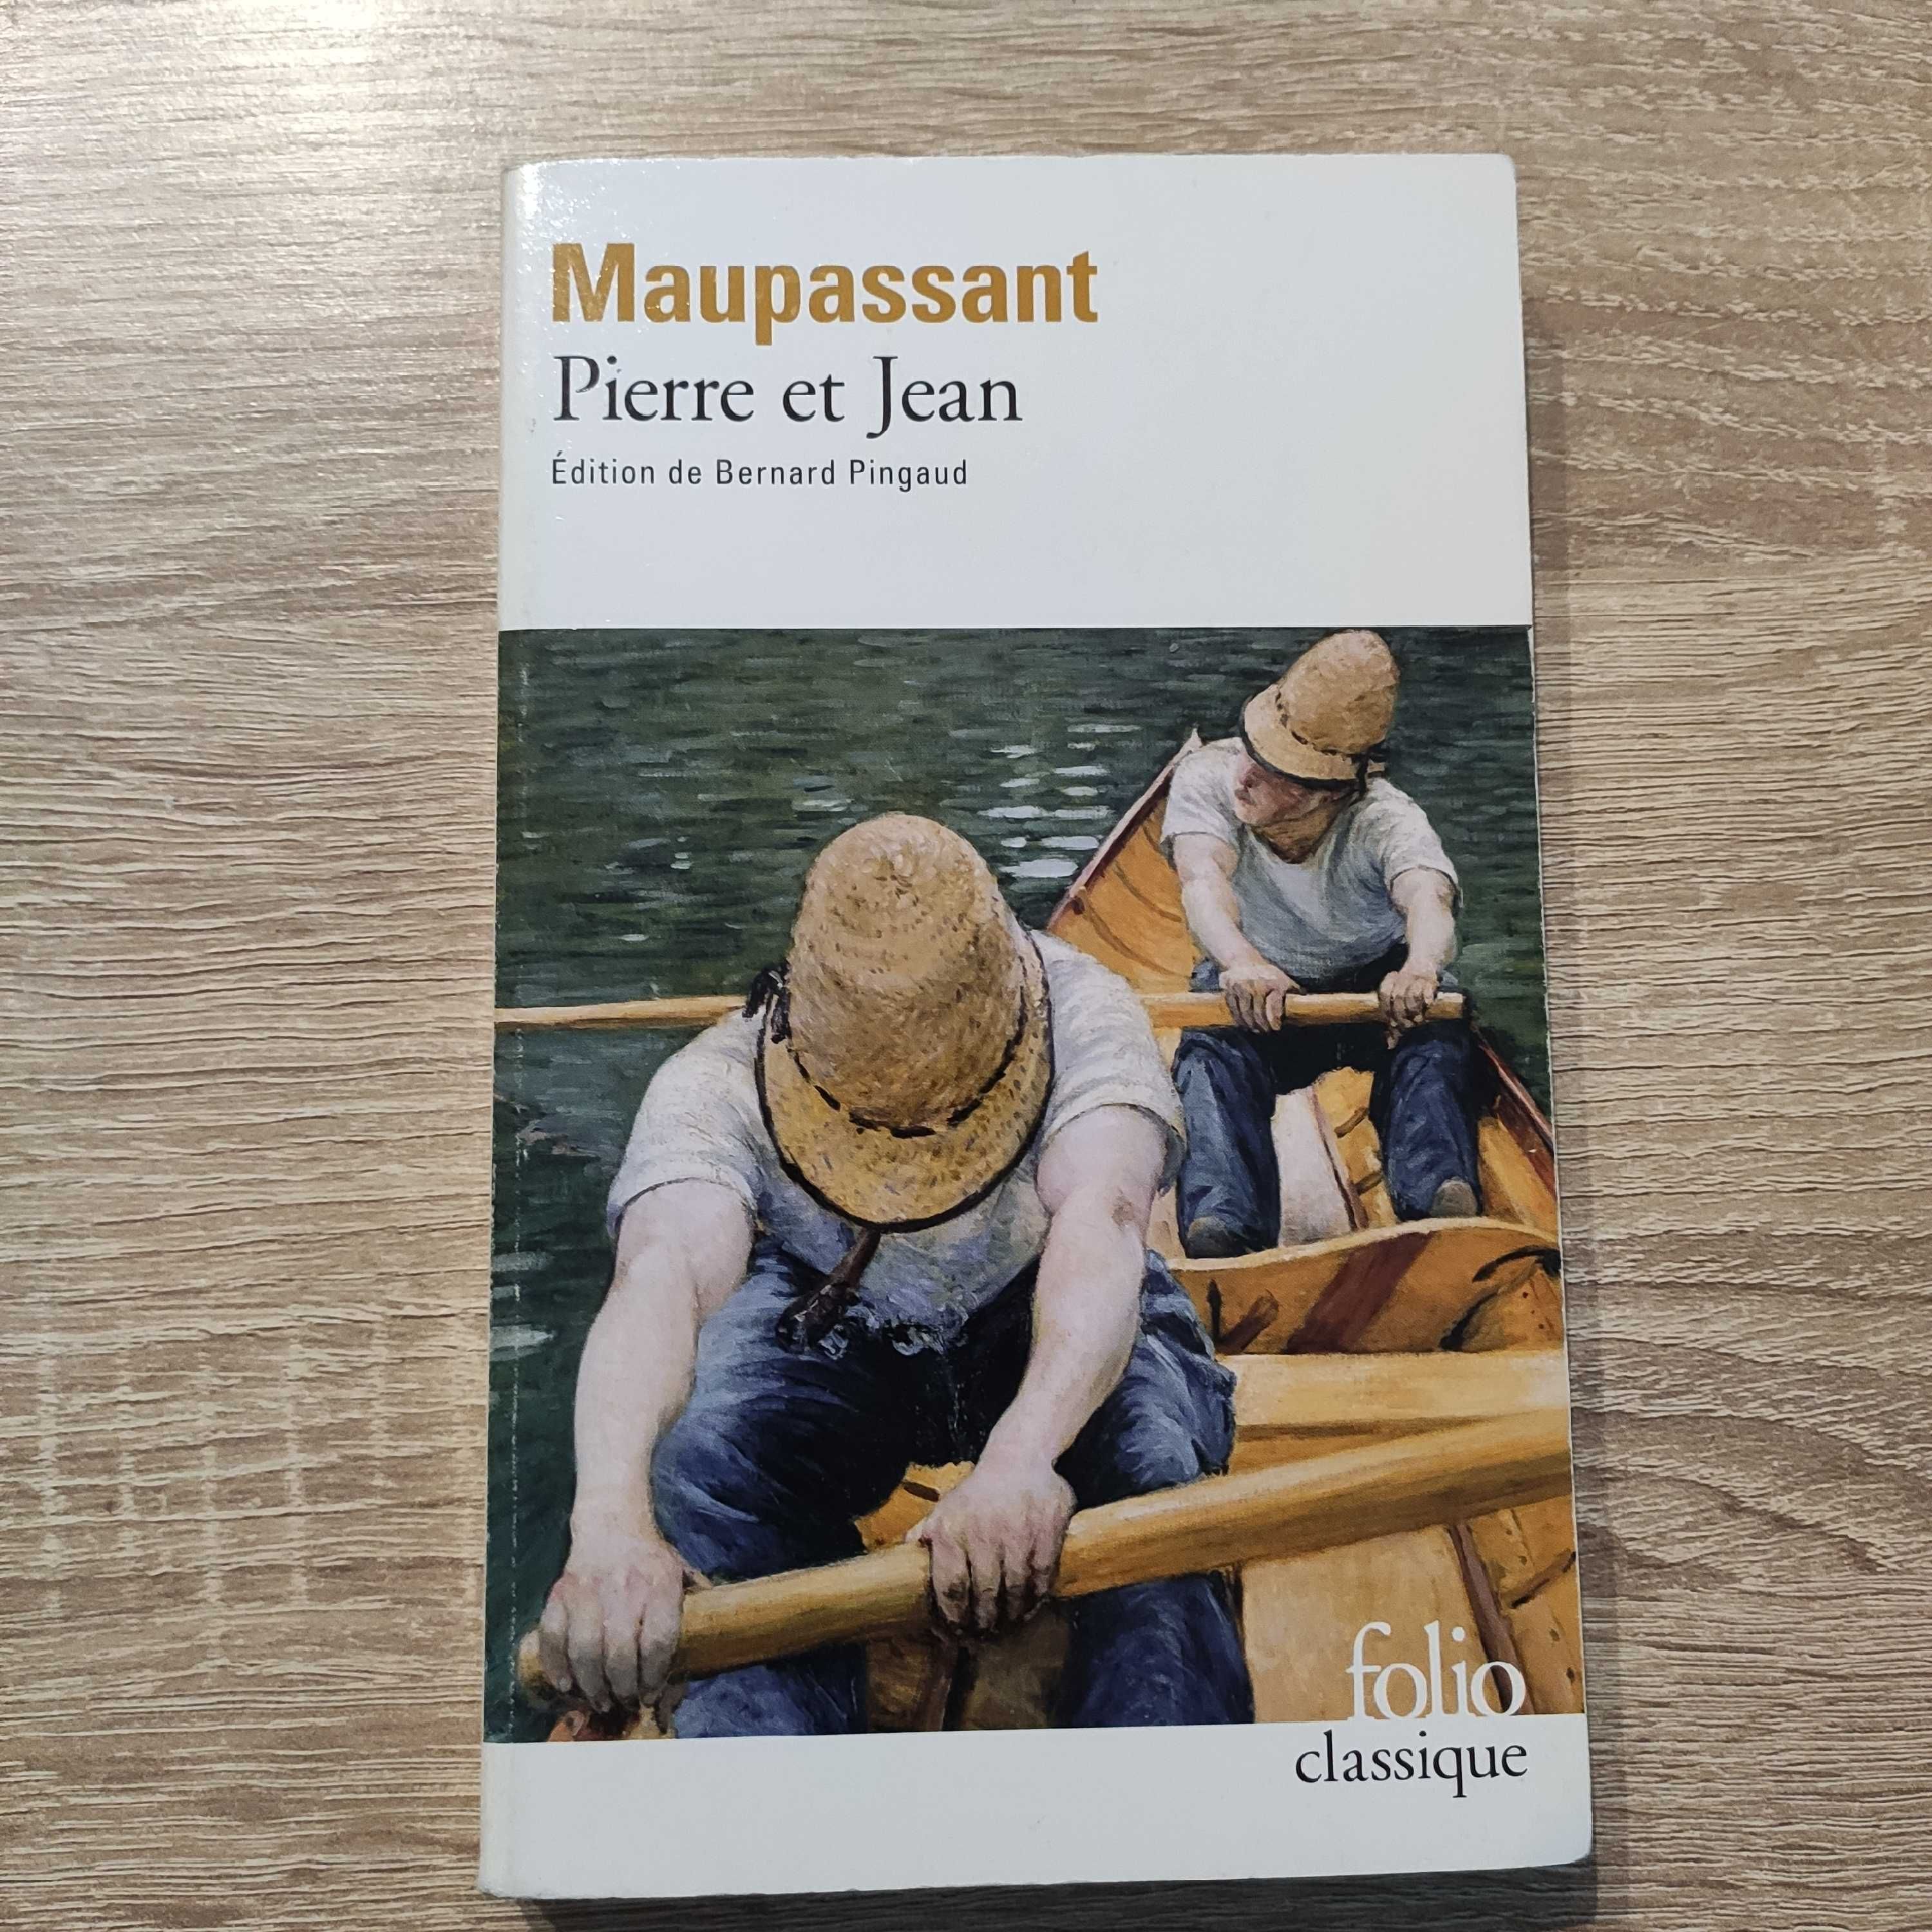 Maupassant "Le Horla", "Pierre et Jean"